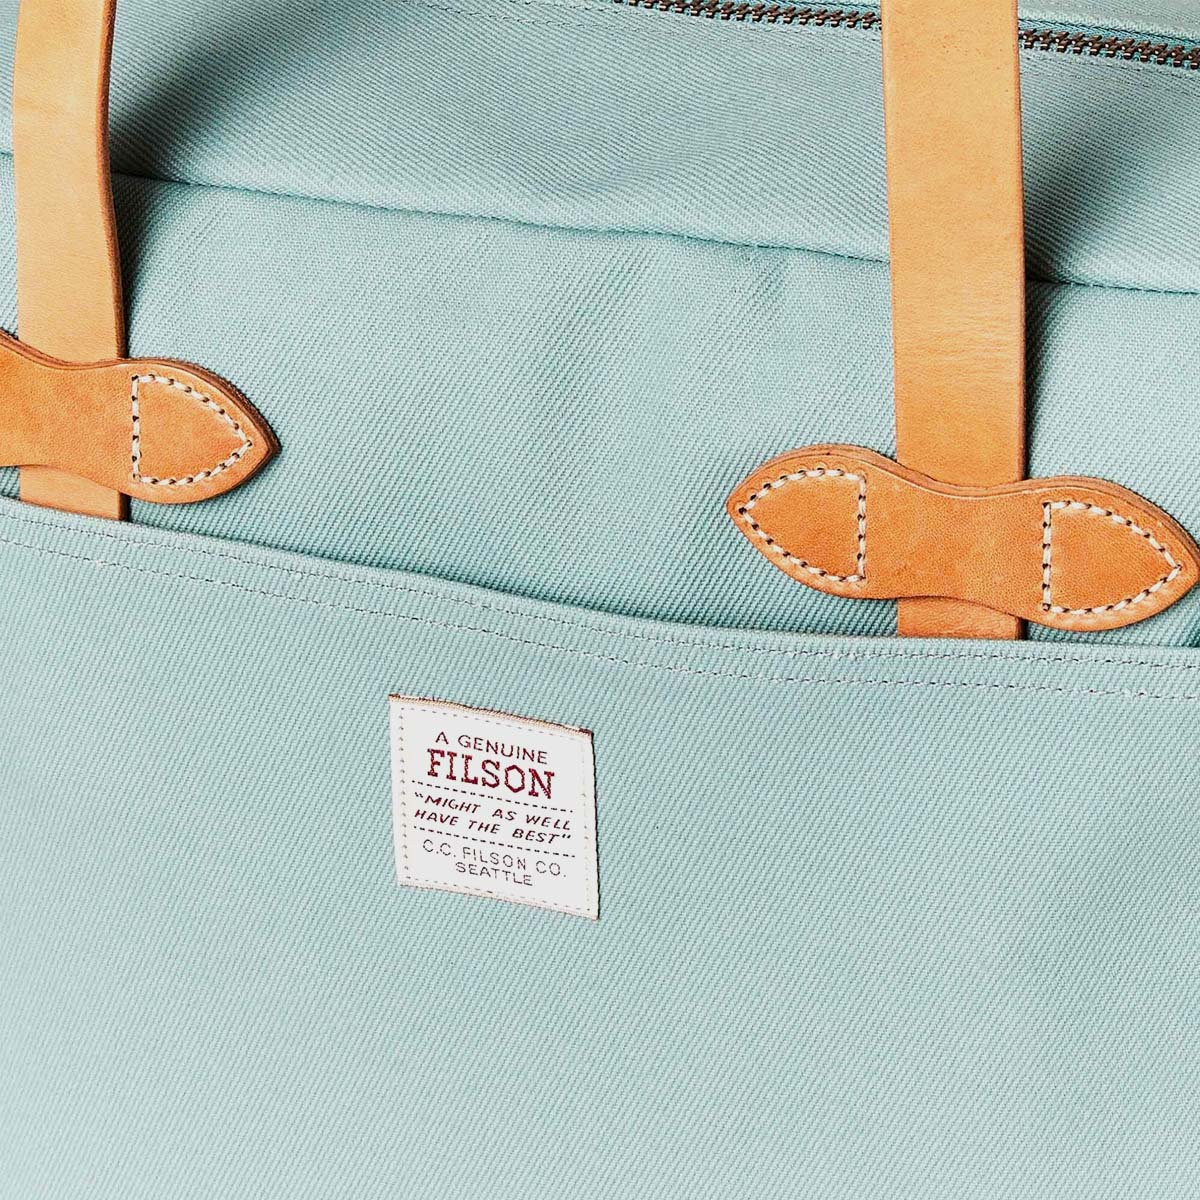 Filson Rugged Twill Tote Bag With Zipper Lake Green, für Männer und Frauen mit Stil und Liebe zur Qualität